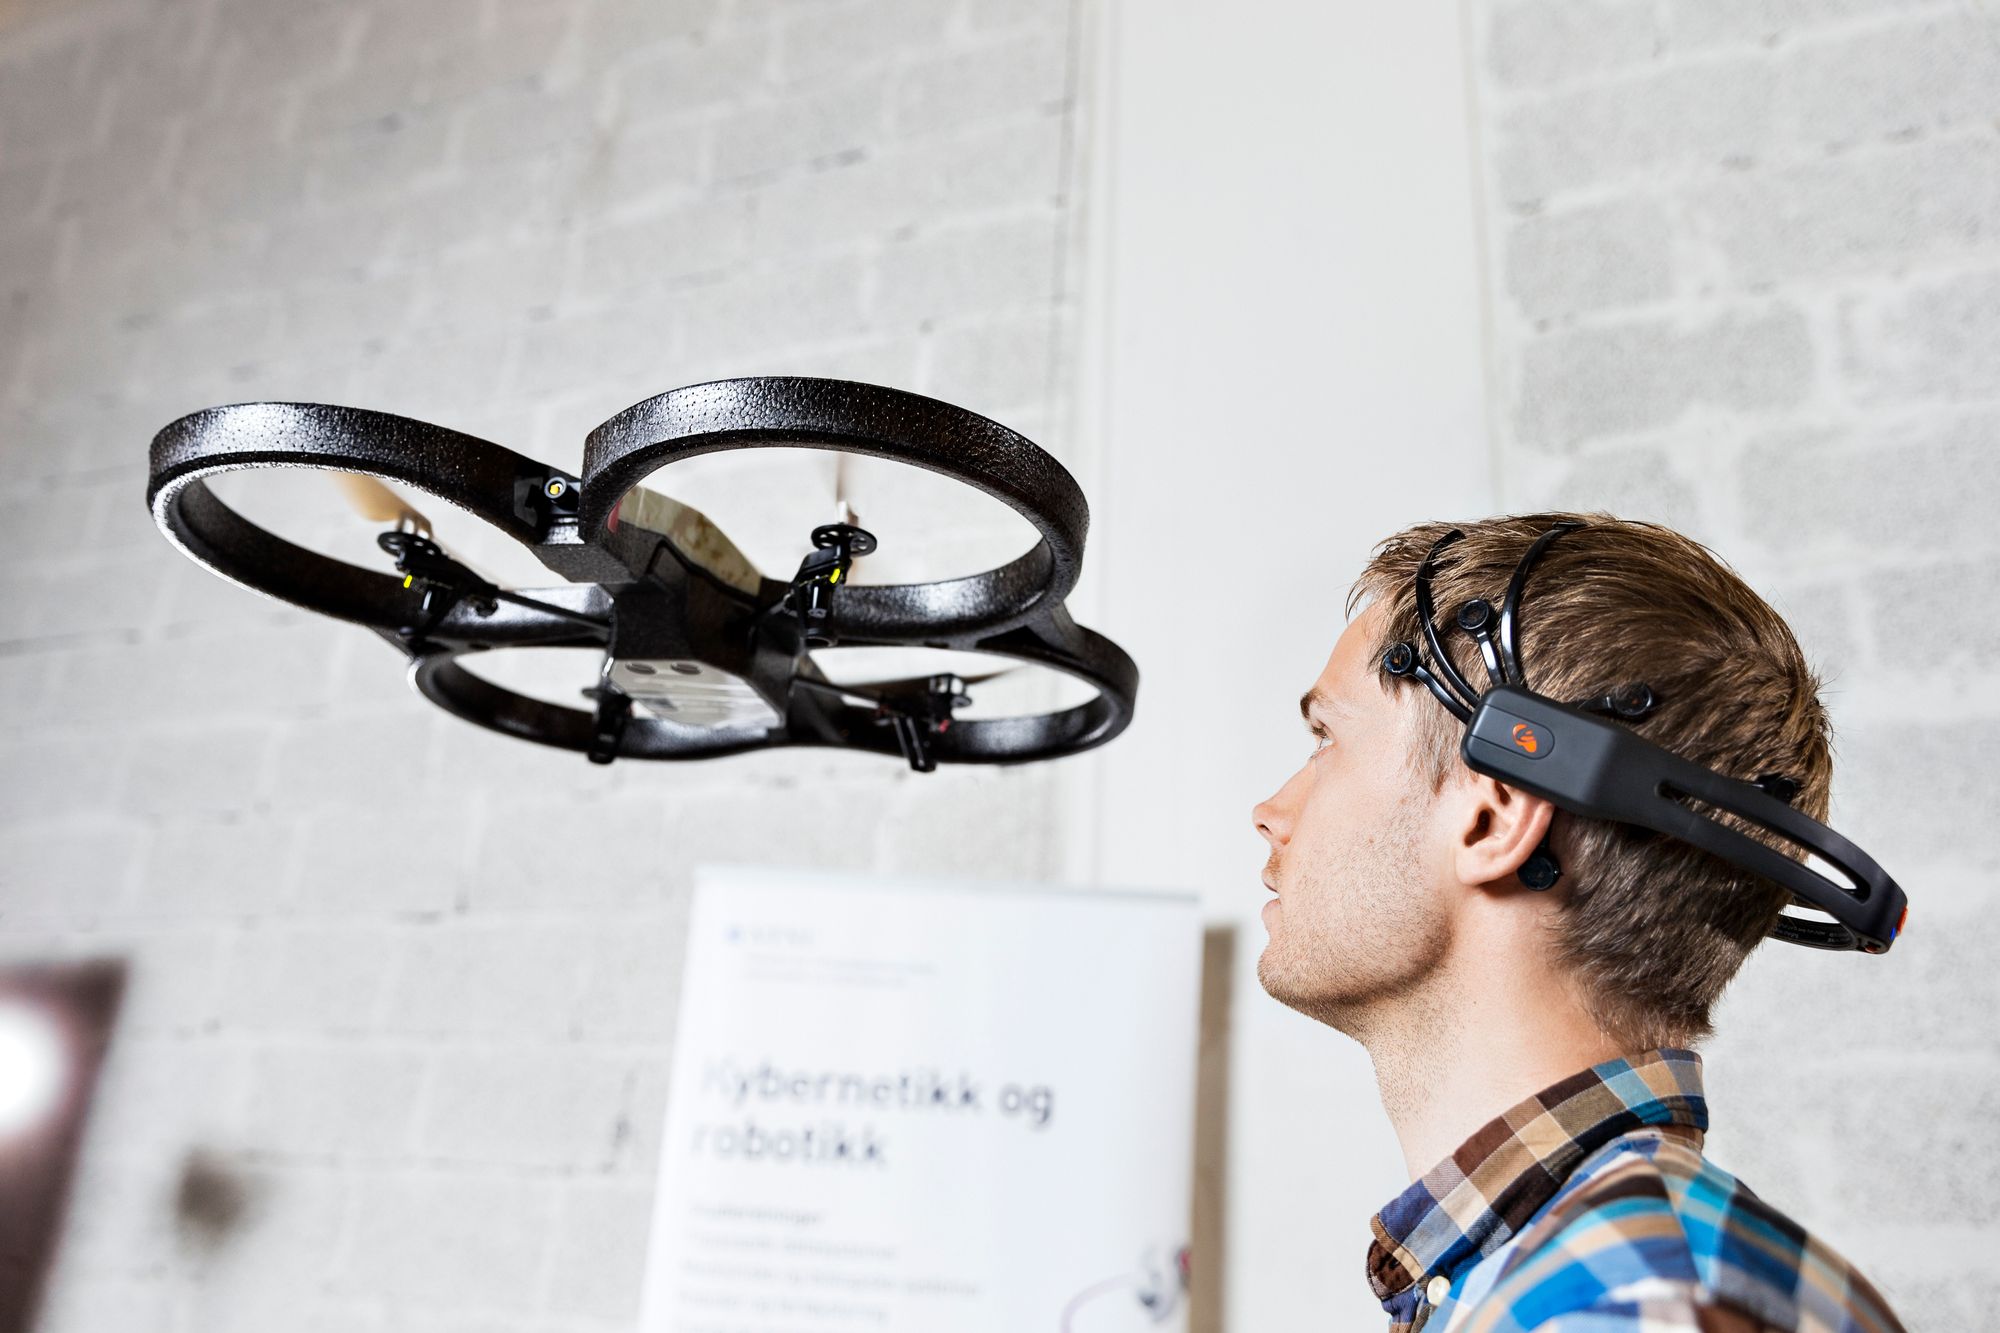 Stipendiat Atle Rygg styrer denne dronen med ansiktsbevegelser.